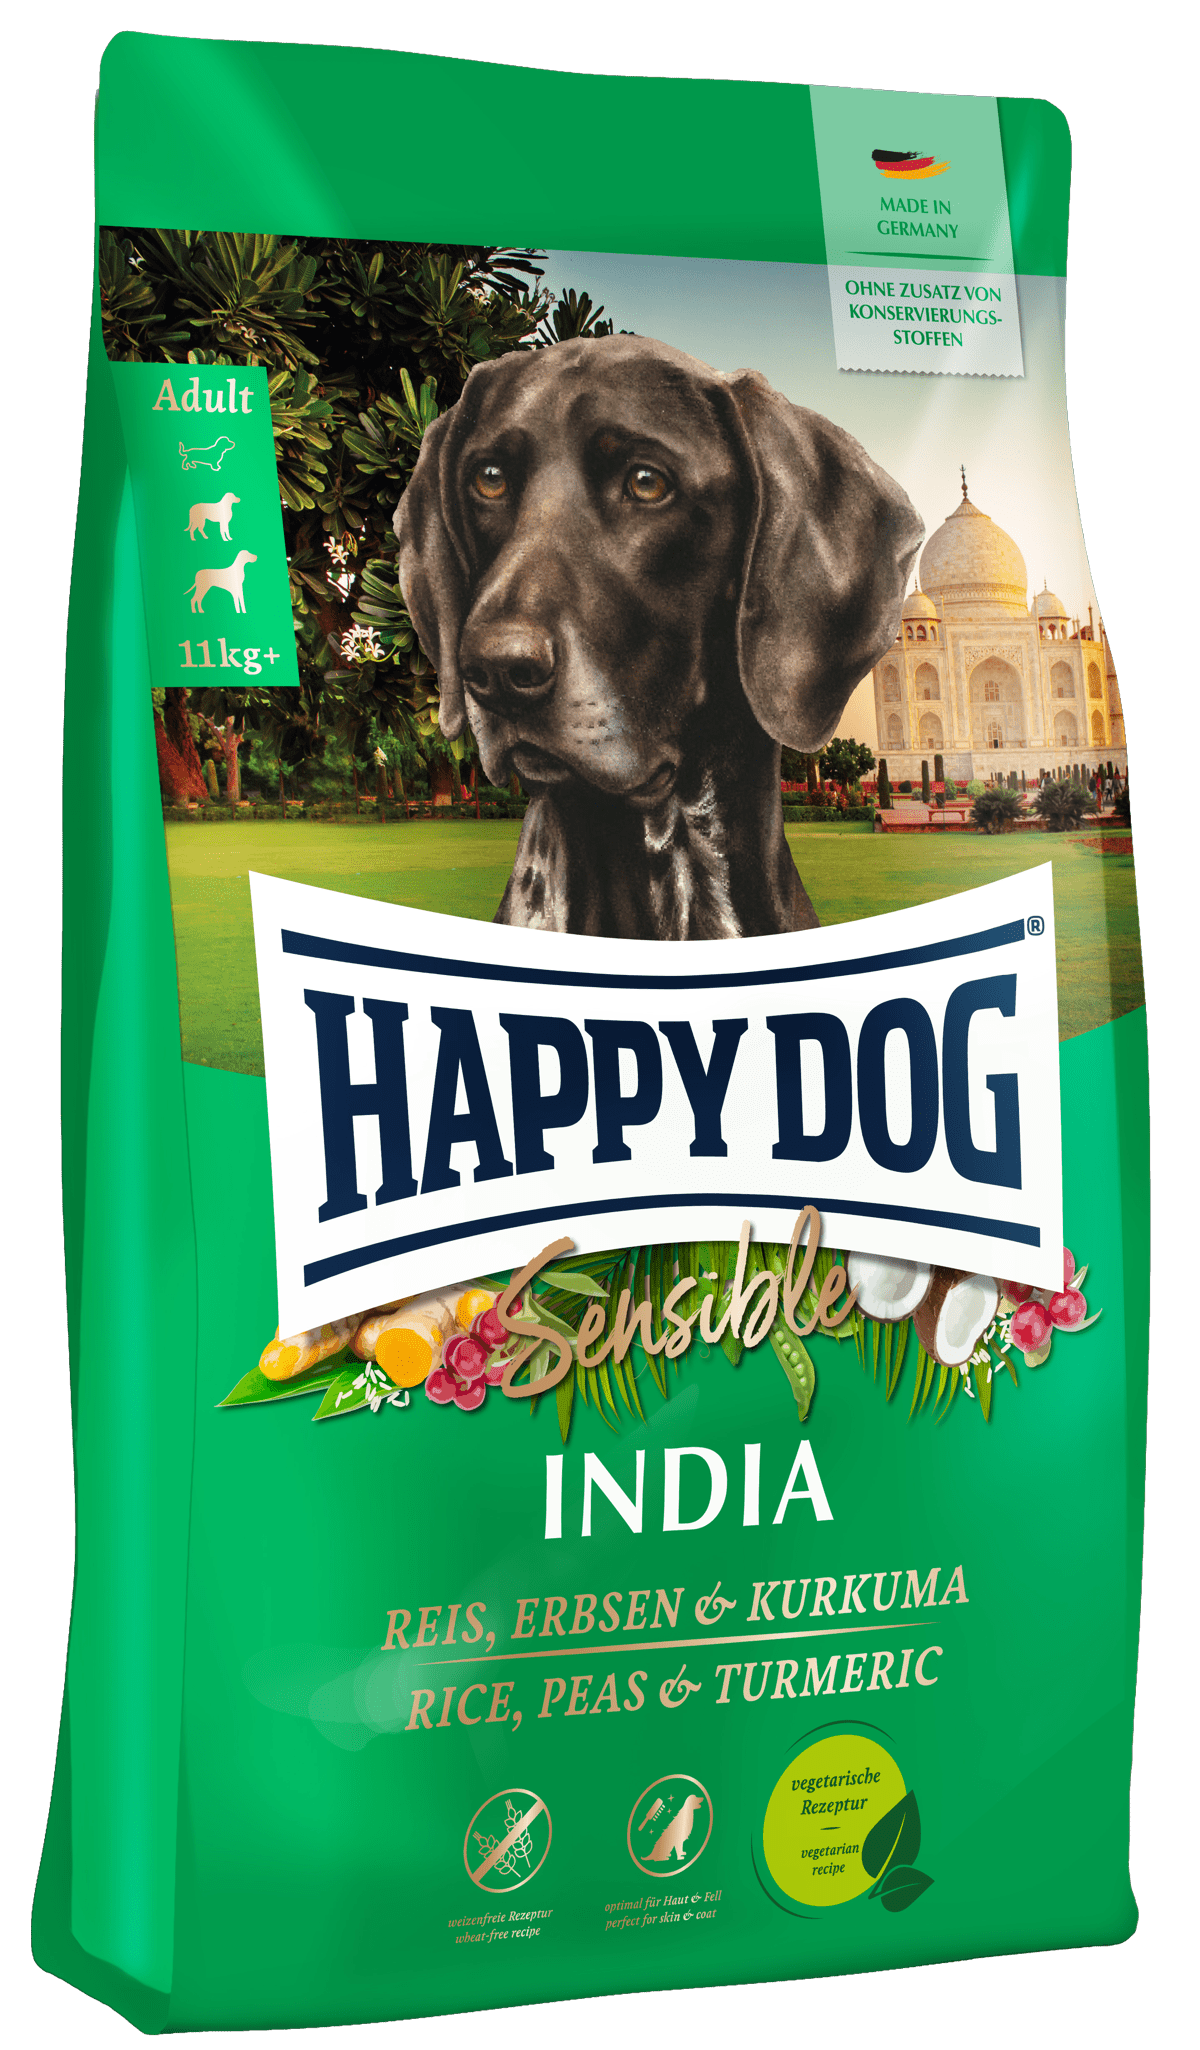 肉魚不使用のHAPPY DOG インディア製品画像